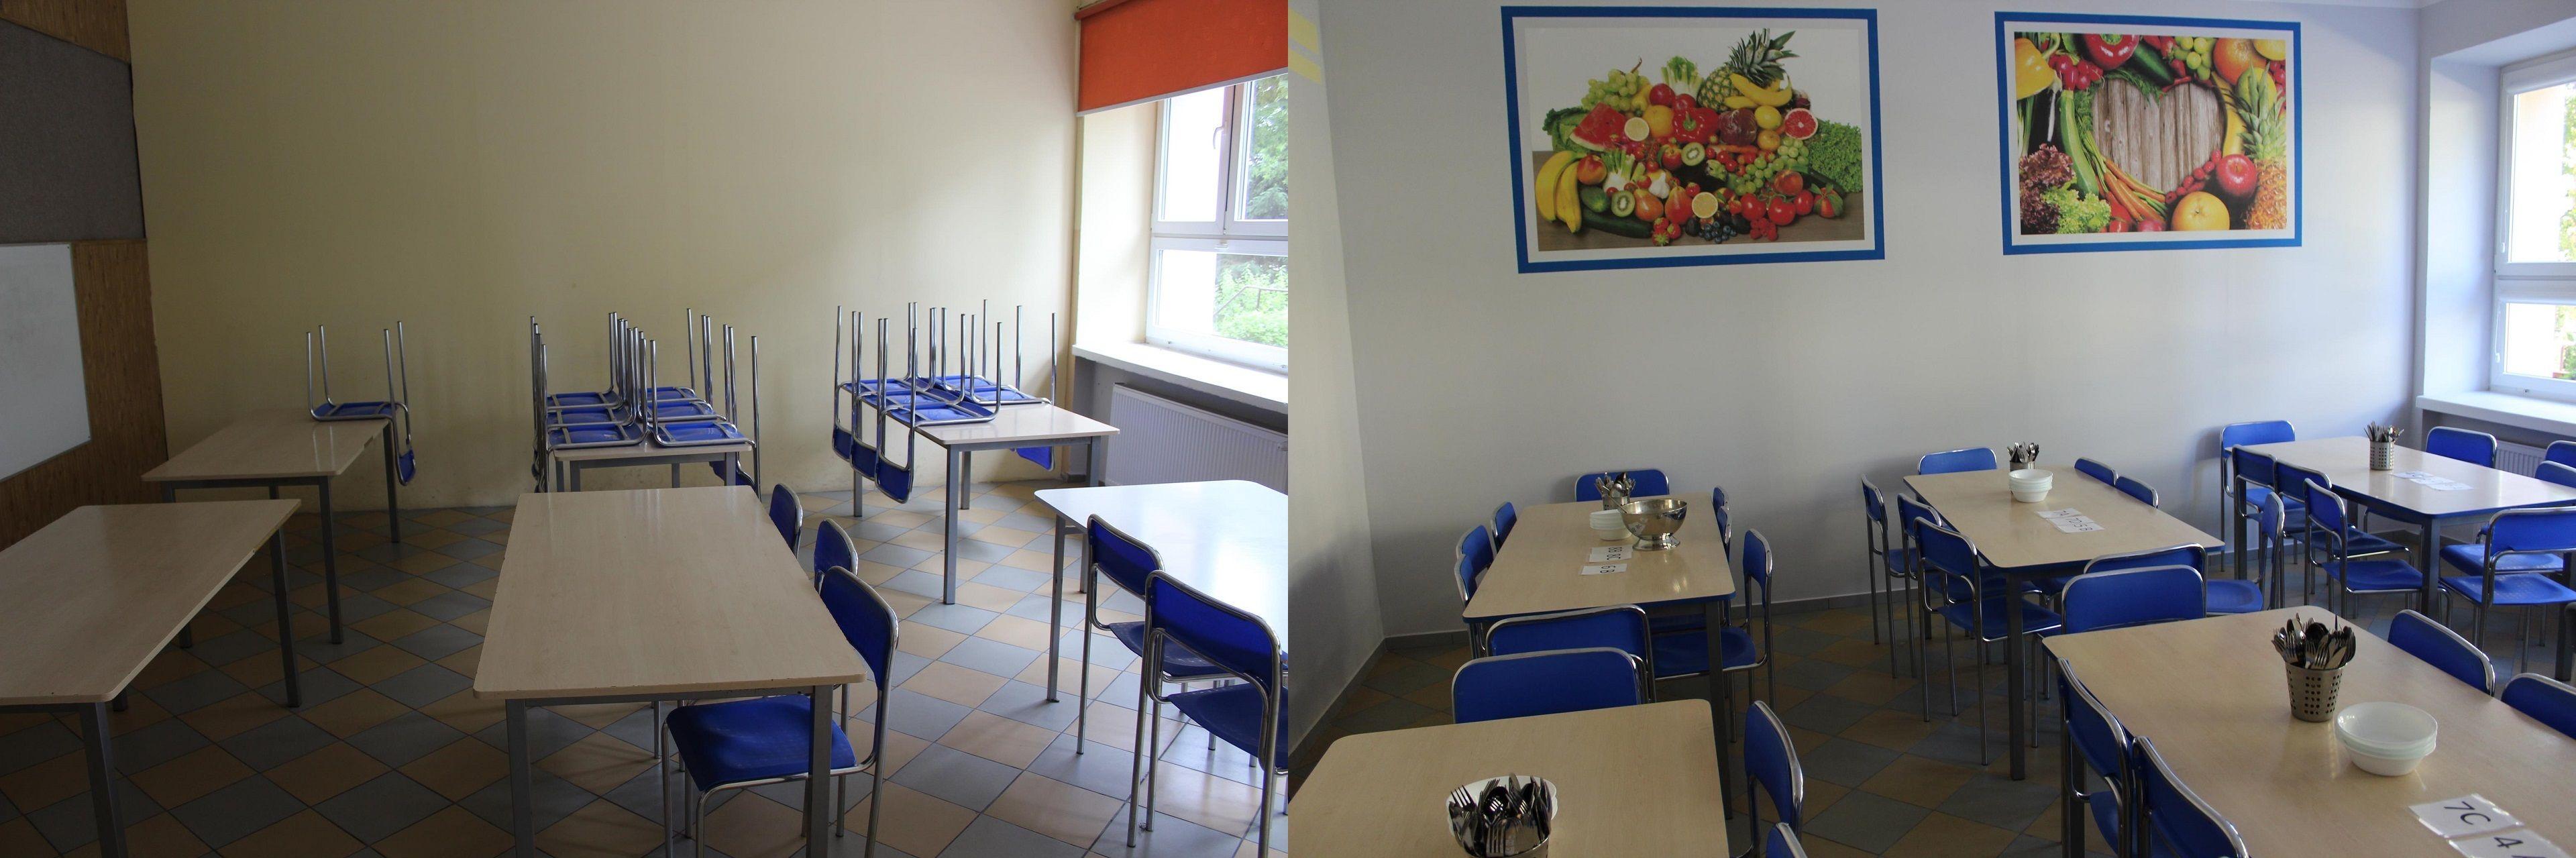 Obrazek porównawczy przed i po remoncie stołówki w Szkole Podstawowej nr 3 w Lipnie - kliknięcie spowoduje powiększenie zdjęcia